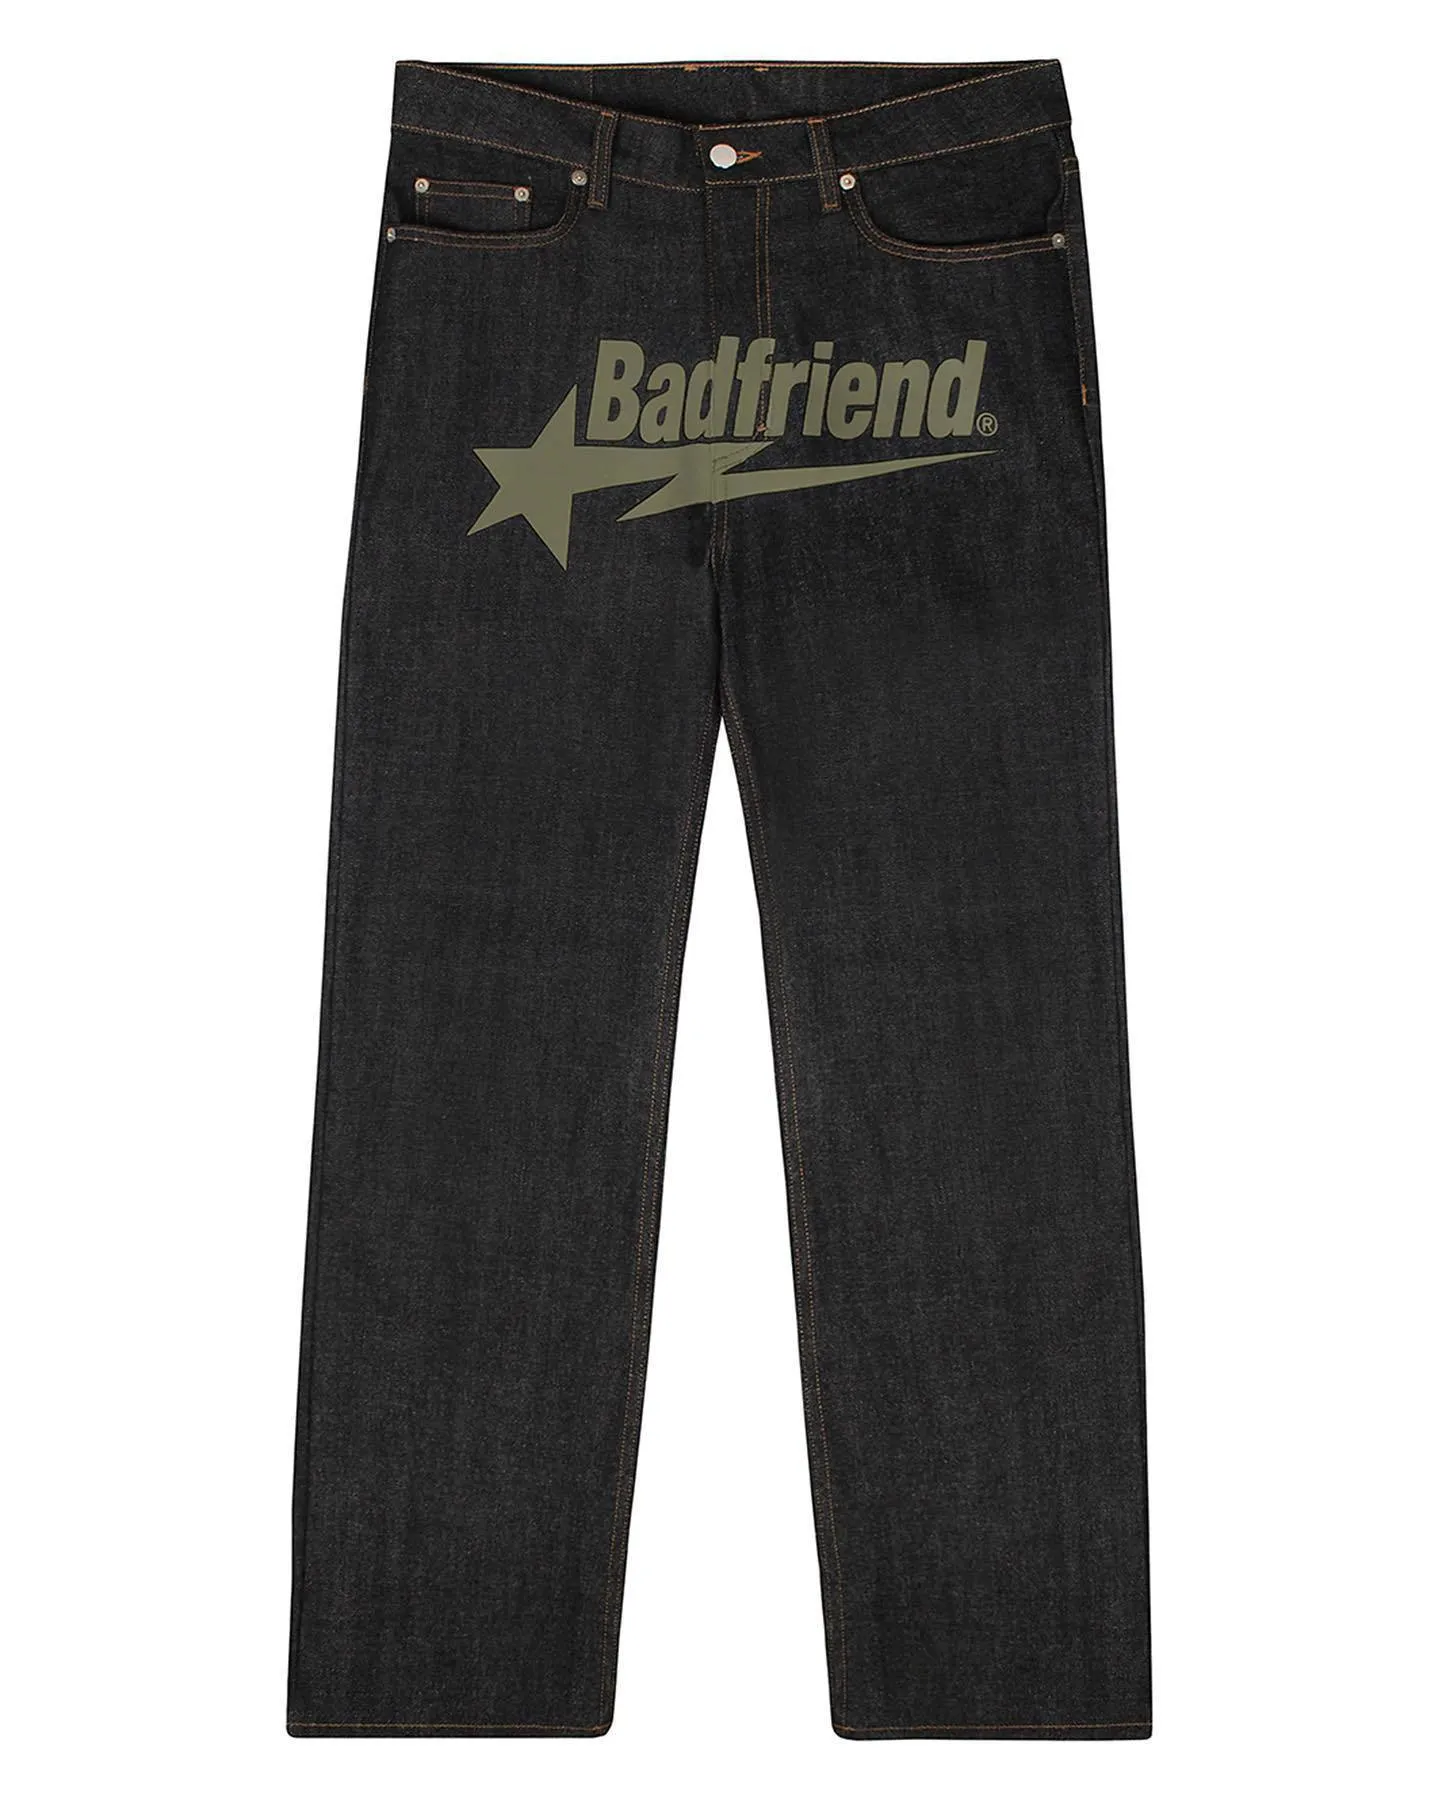 Pantalon Baggy imprimé pour hommes, Streetwear Hip Hop, jean Y2k, vêtements droits, amples, en Denim, pantalons Vaqueros Badfriend 690